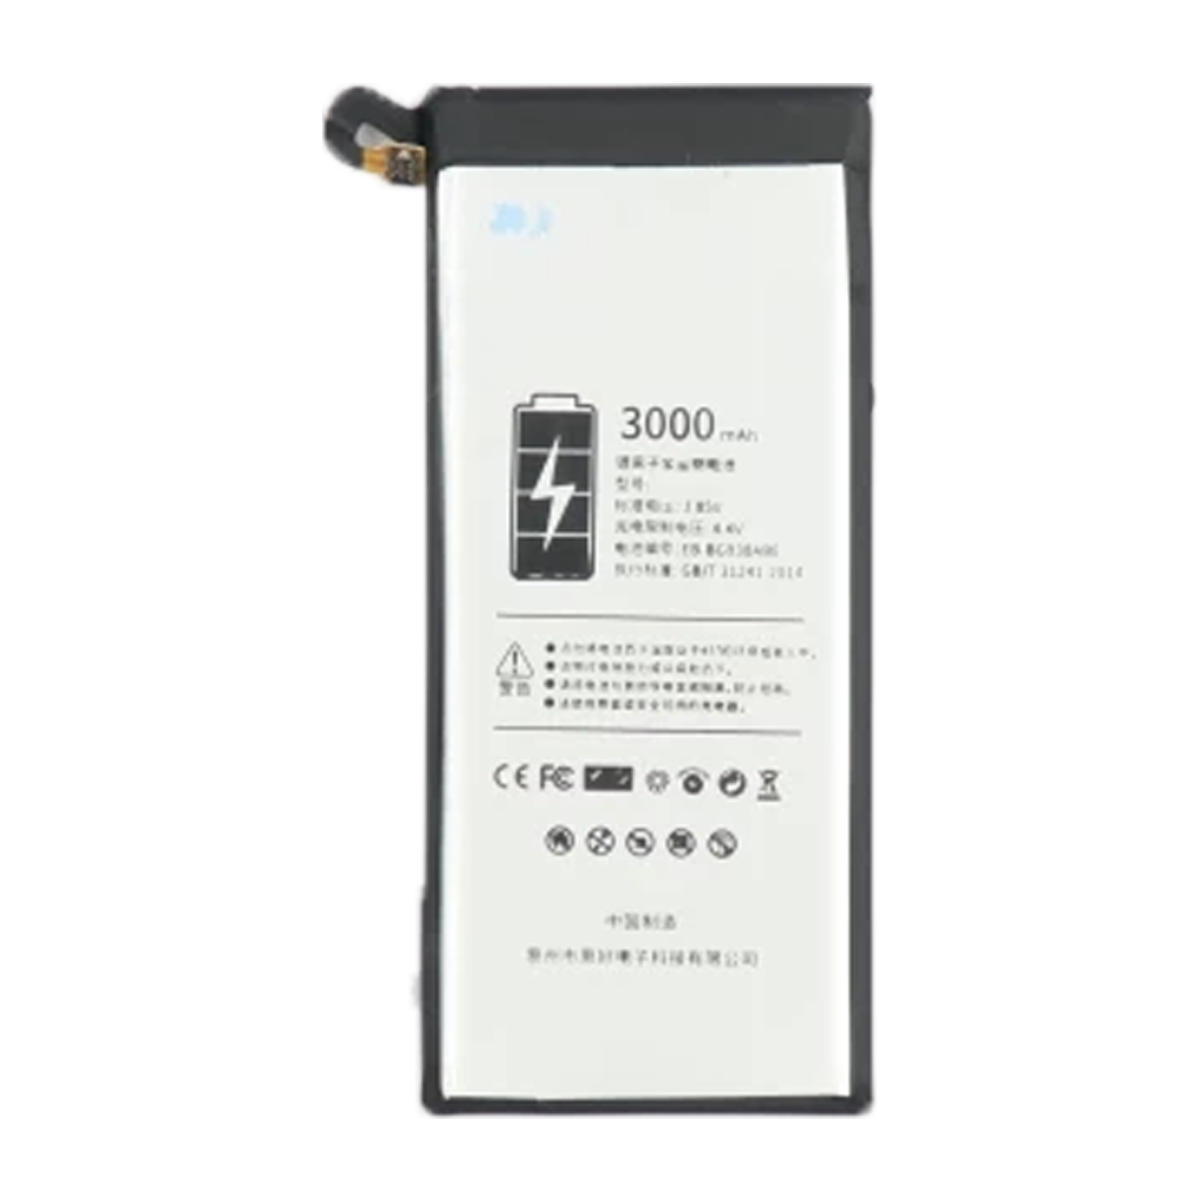 باتری فلیکسبل کد BG9EB-30ABE مناسب برای گوشی سامسونگ Galaxy S7